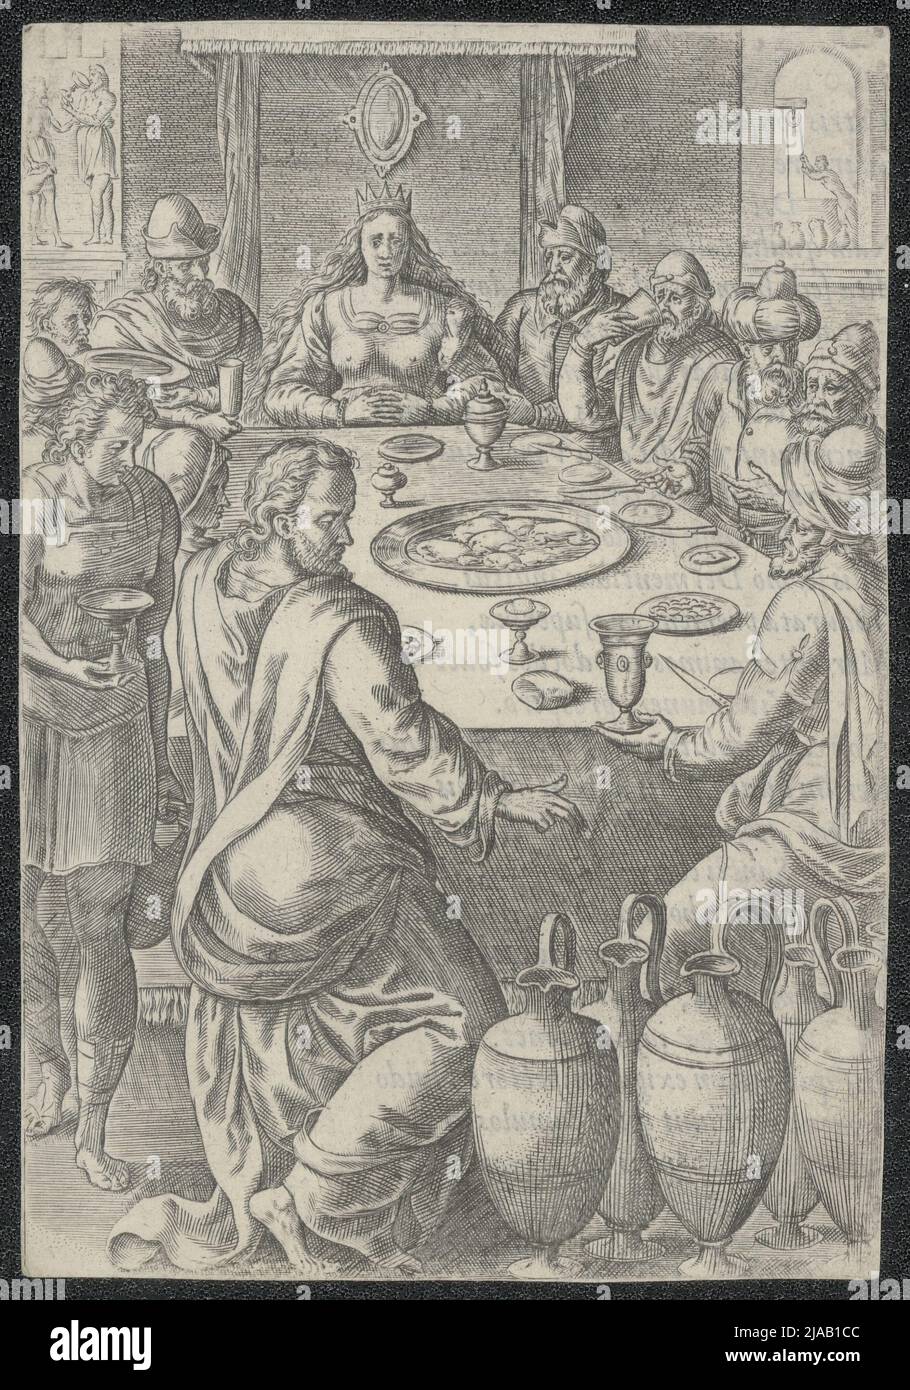 Stampa raffigurante il matrimonio a Cana, che fu teatro del primo dei miracoli di Gesù, trasformando l'acqua in vino. Foto Stock